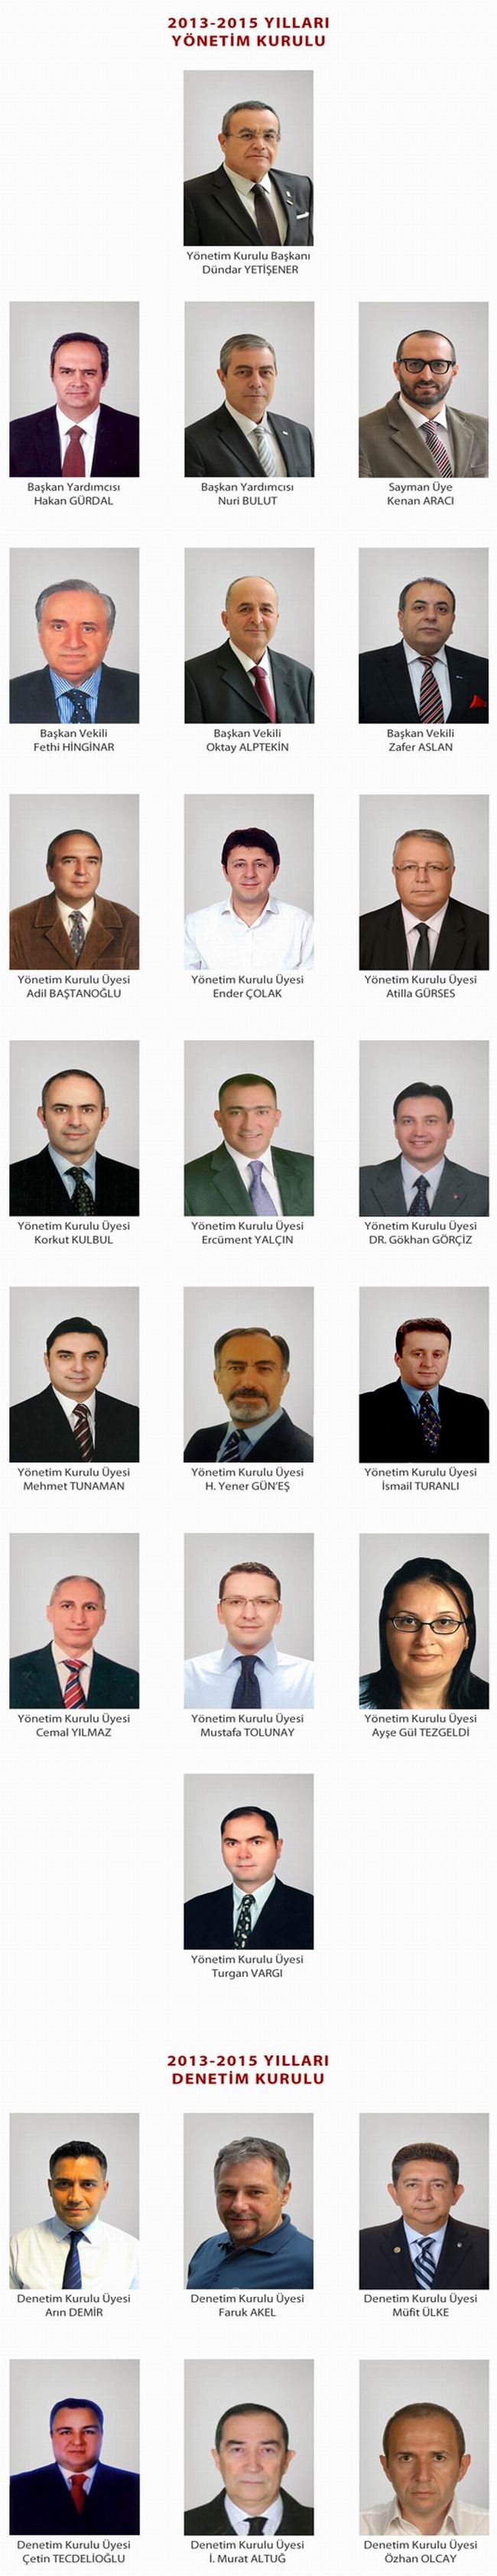 İMSAD - Türkiye İnşaat Malzemesi Sanayicileri Derneği